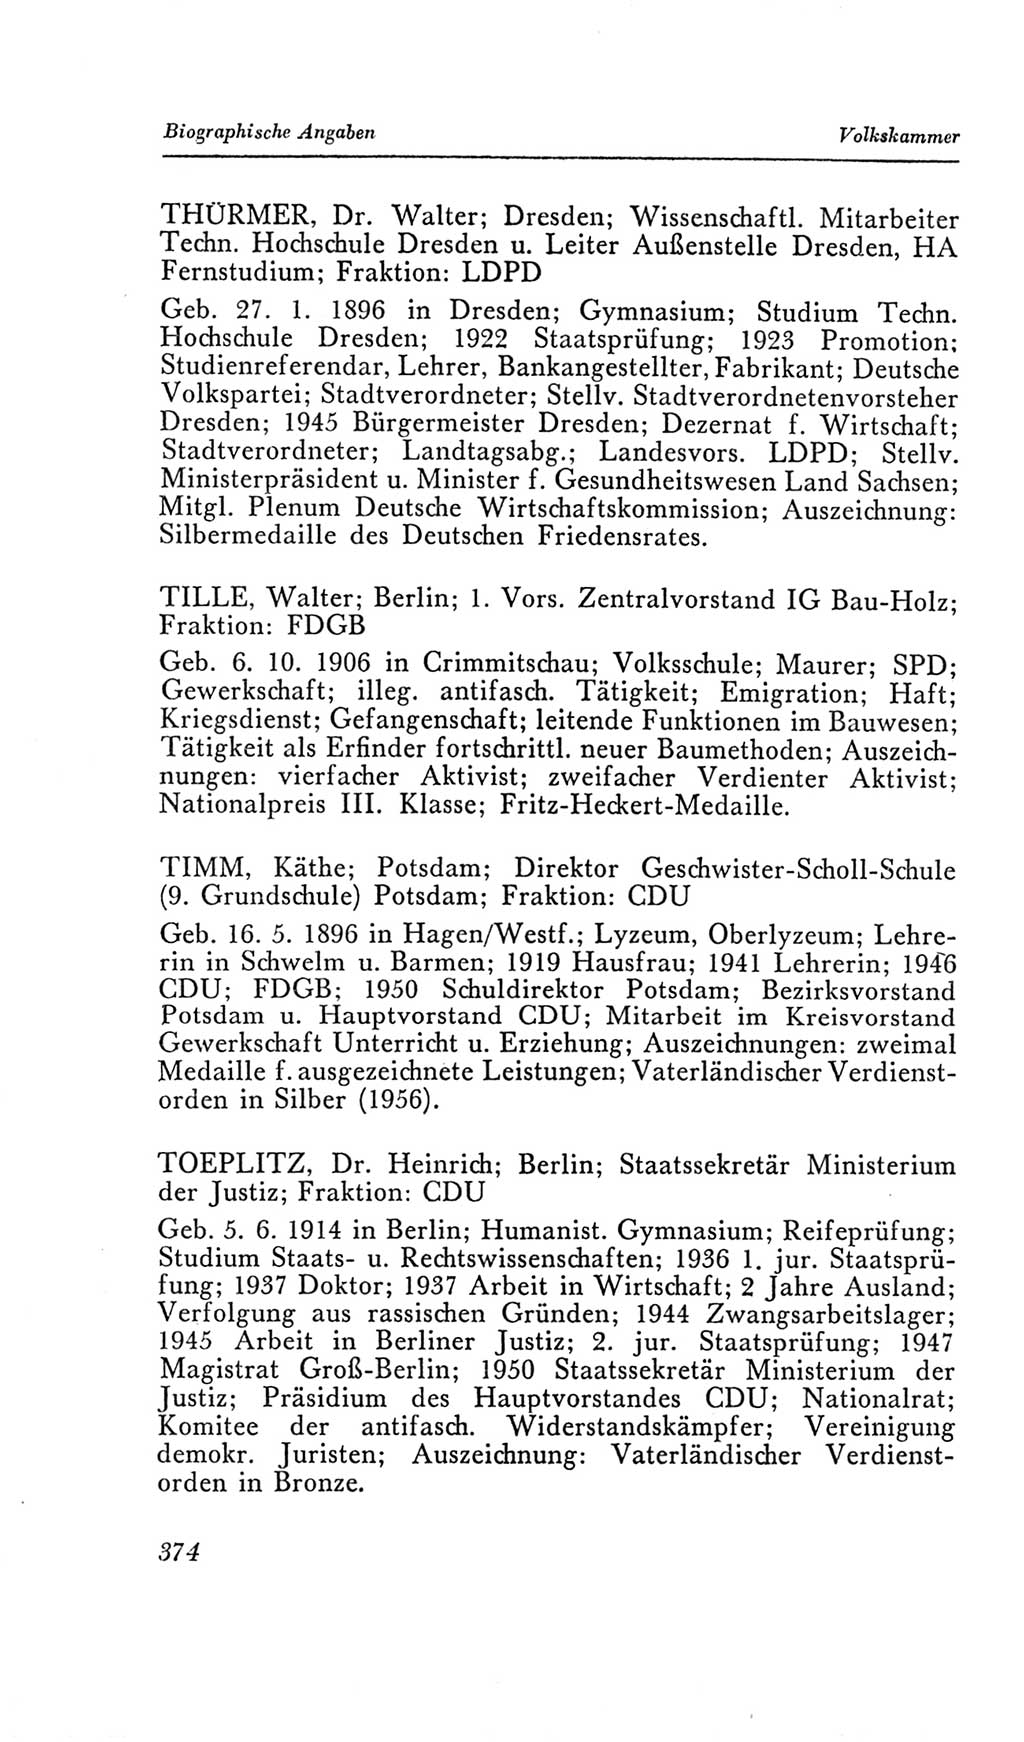 Handbuch der Volkskammer (VK) der Deutschen Demokratischen Republik (DDR), 2. Wahlperiode 1954-1958, Seite 374 (Hdb. VK. DDR, 2. WP. 1954-1958, S. 374)